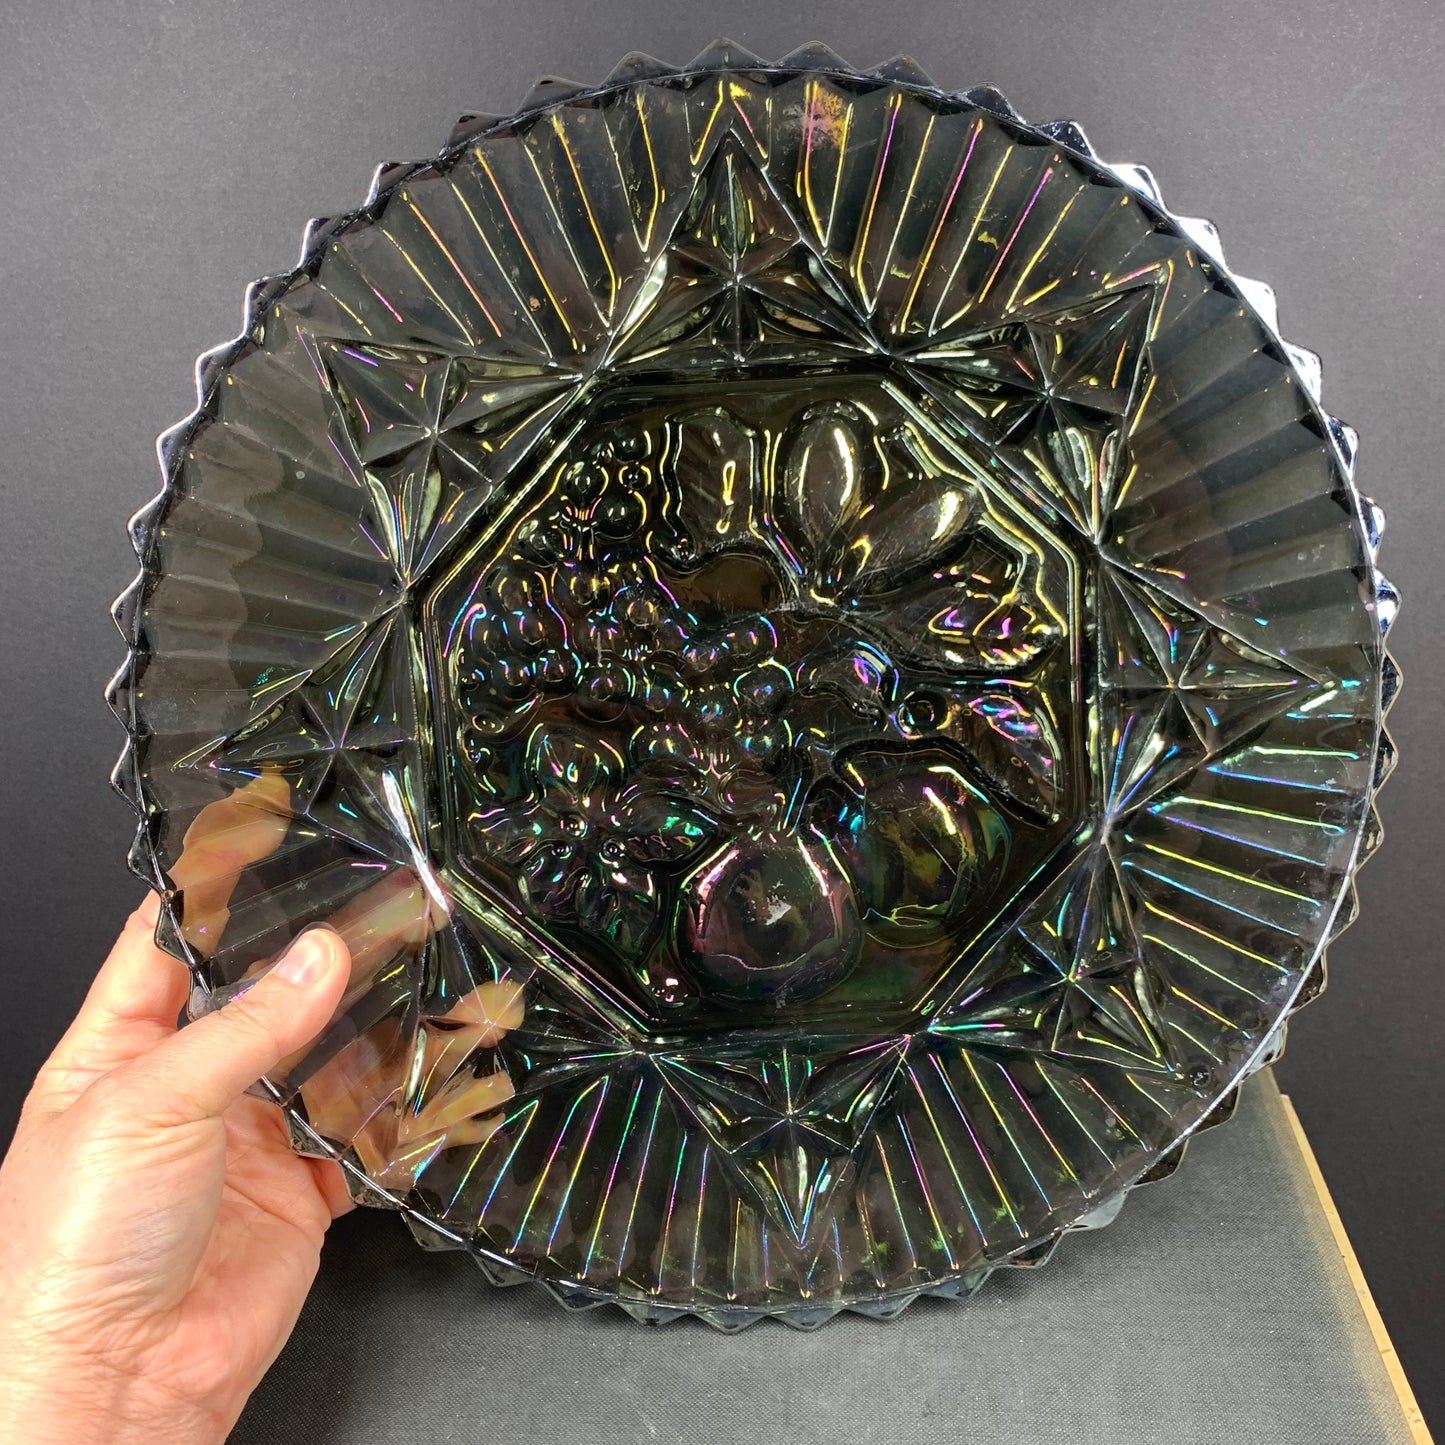 Antique black carnival glass serving platter